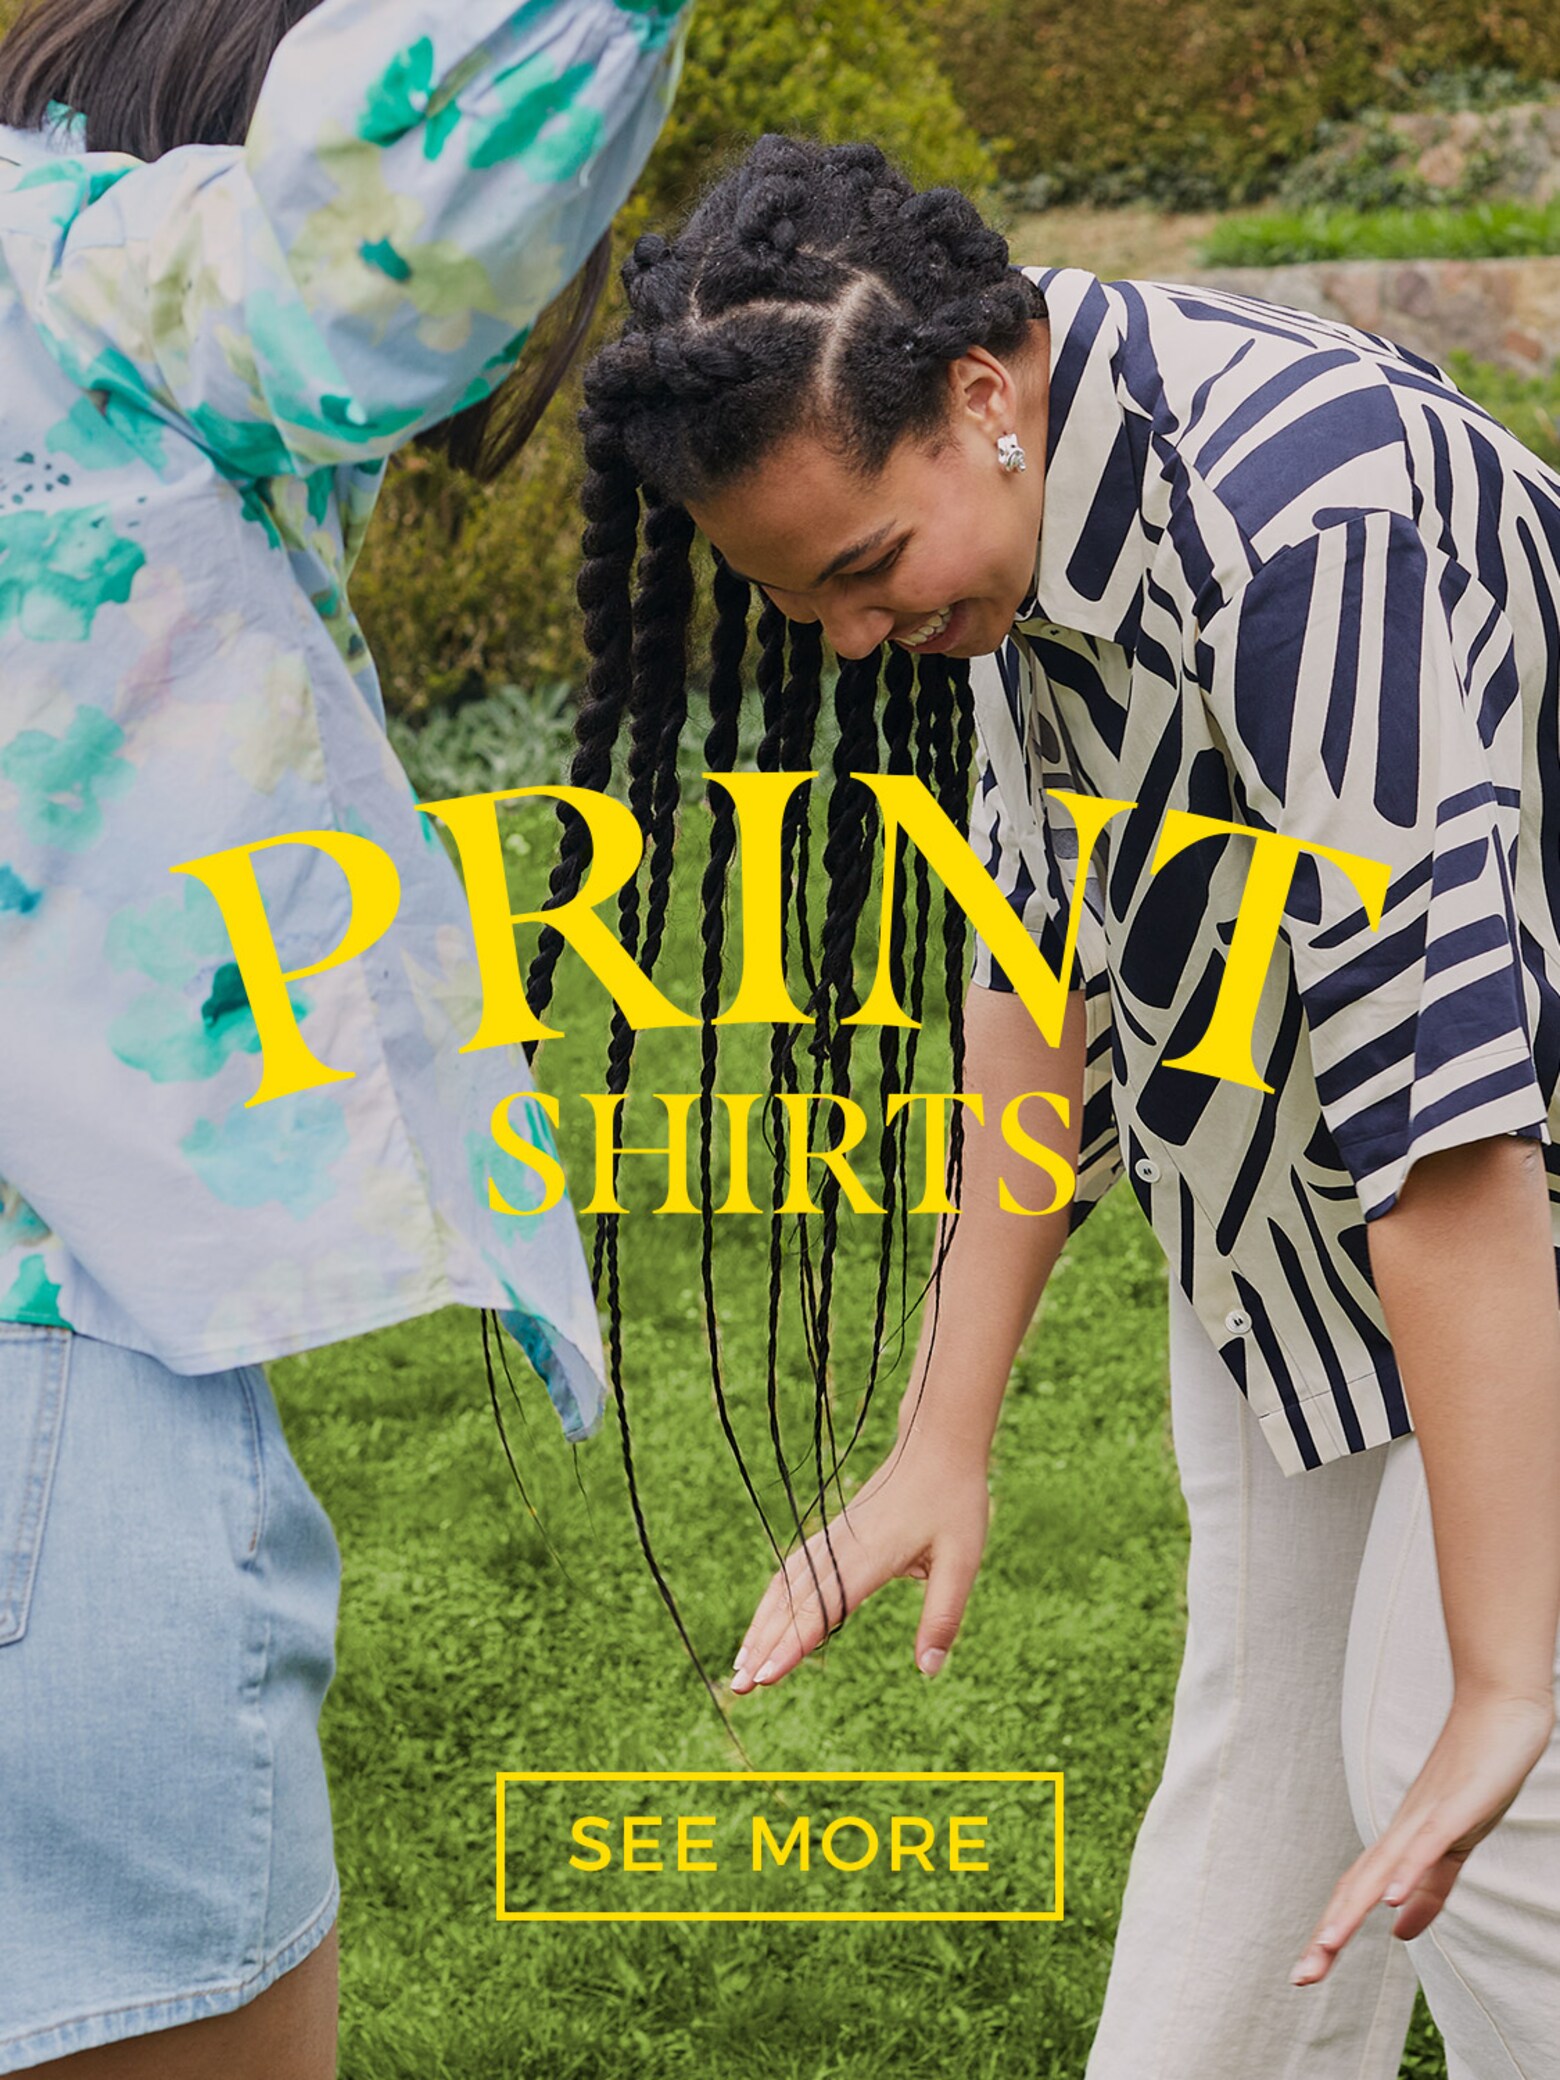 Entdecke Neues! Die bunte Welt der Print-Shirts